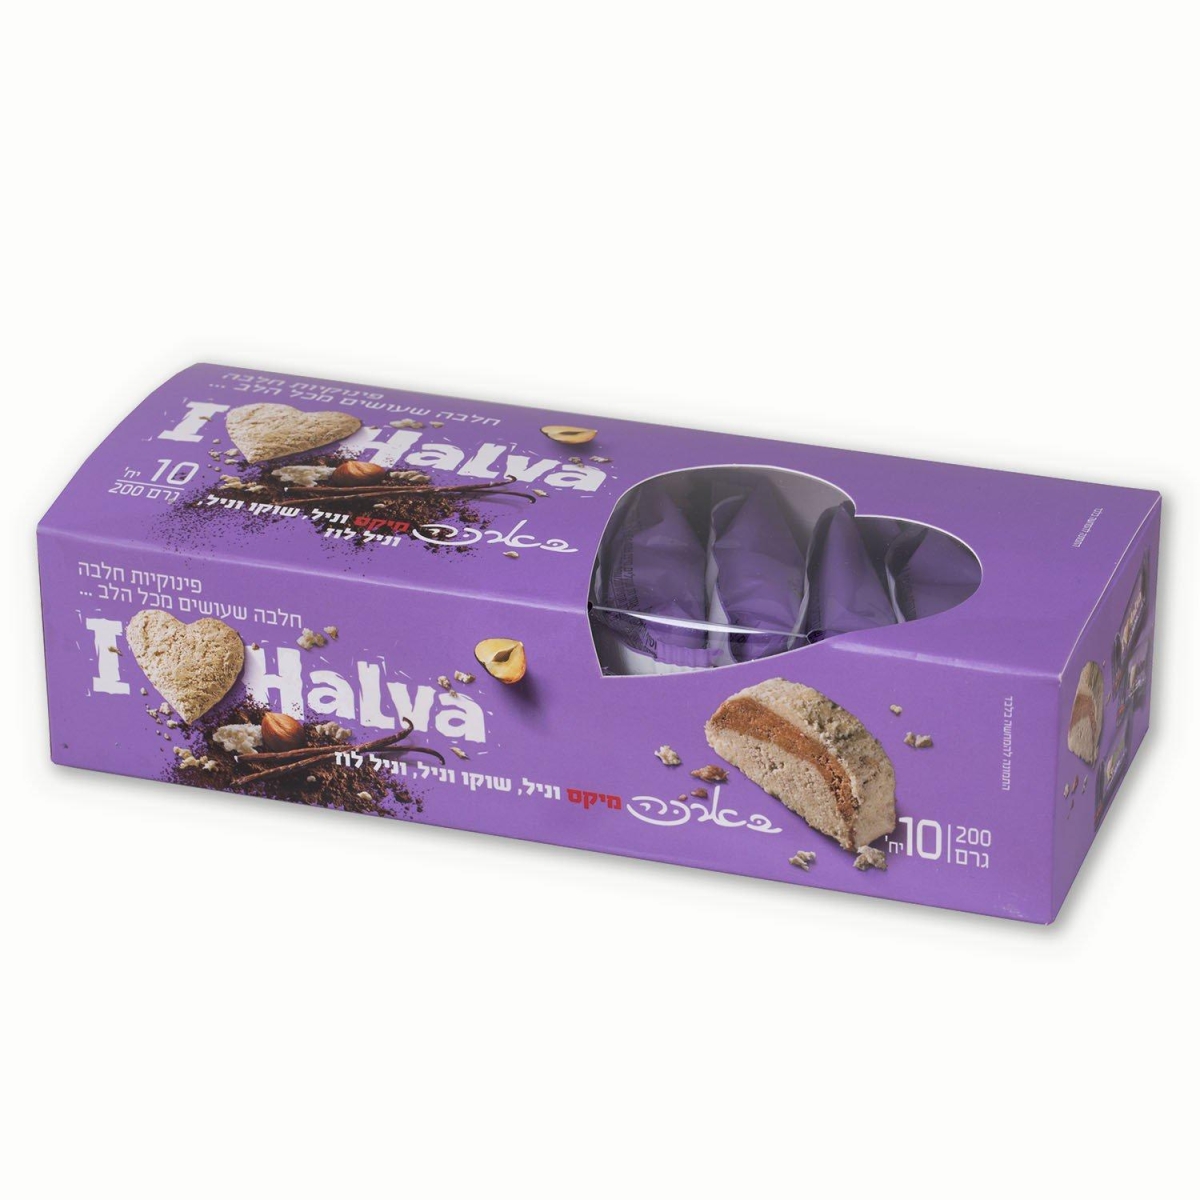 Box of 10 Halva Portions - Mixed Flavor Bars - 1